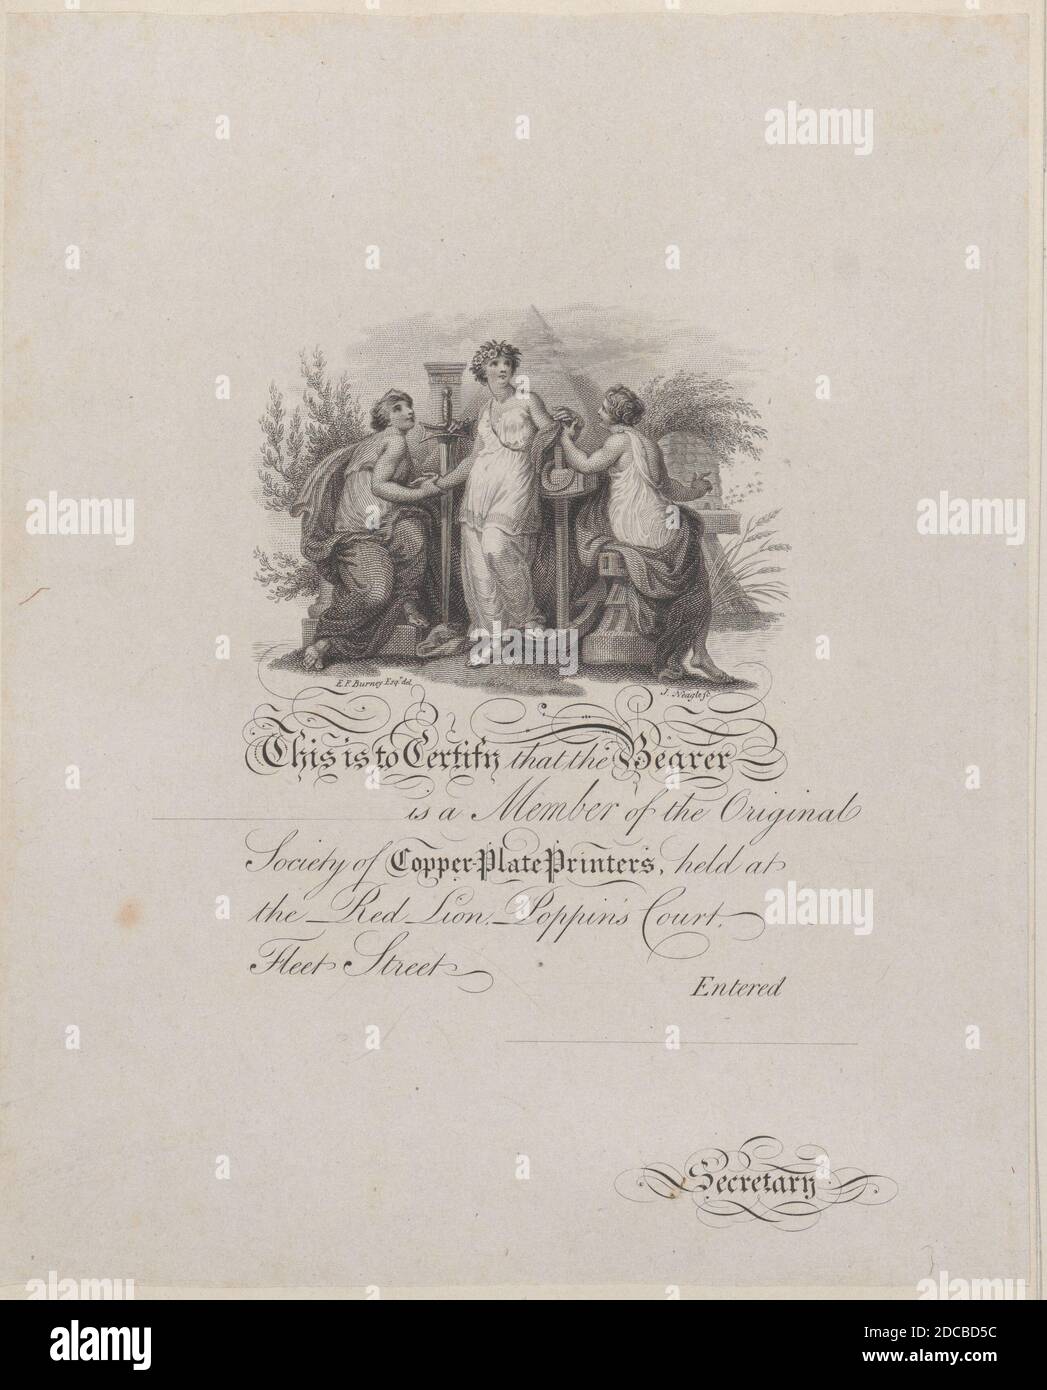 Certificat de membre de la Société des imprimeurs de plaques de cuivre, 19e siècle. Banque D'Images